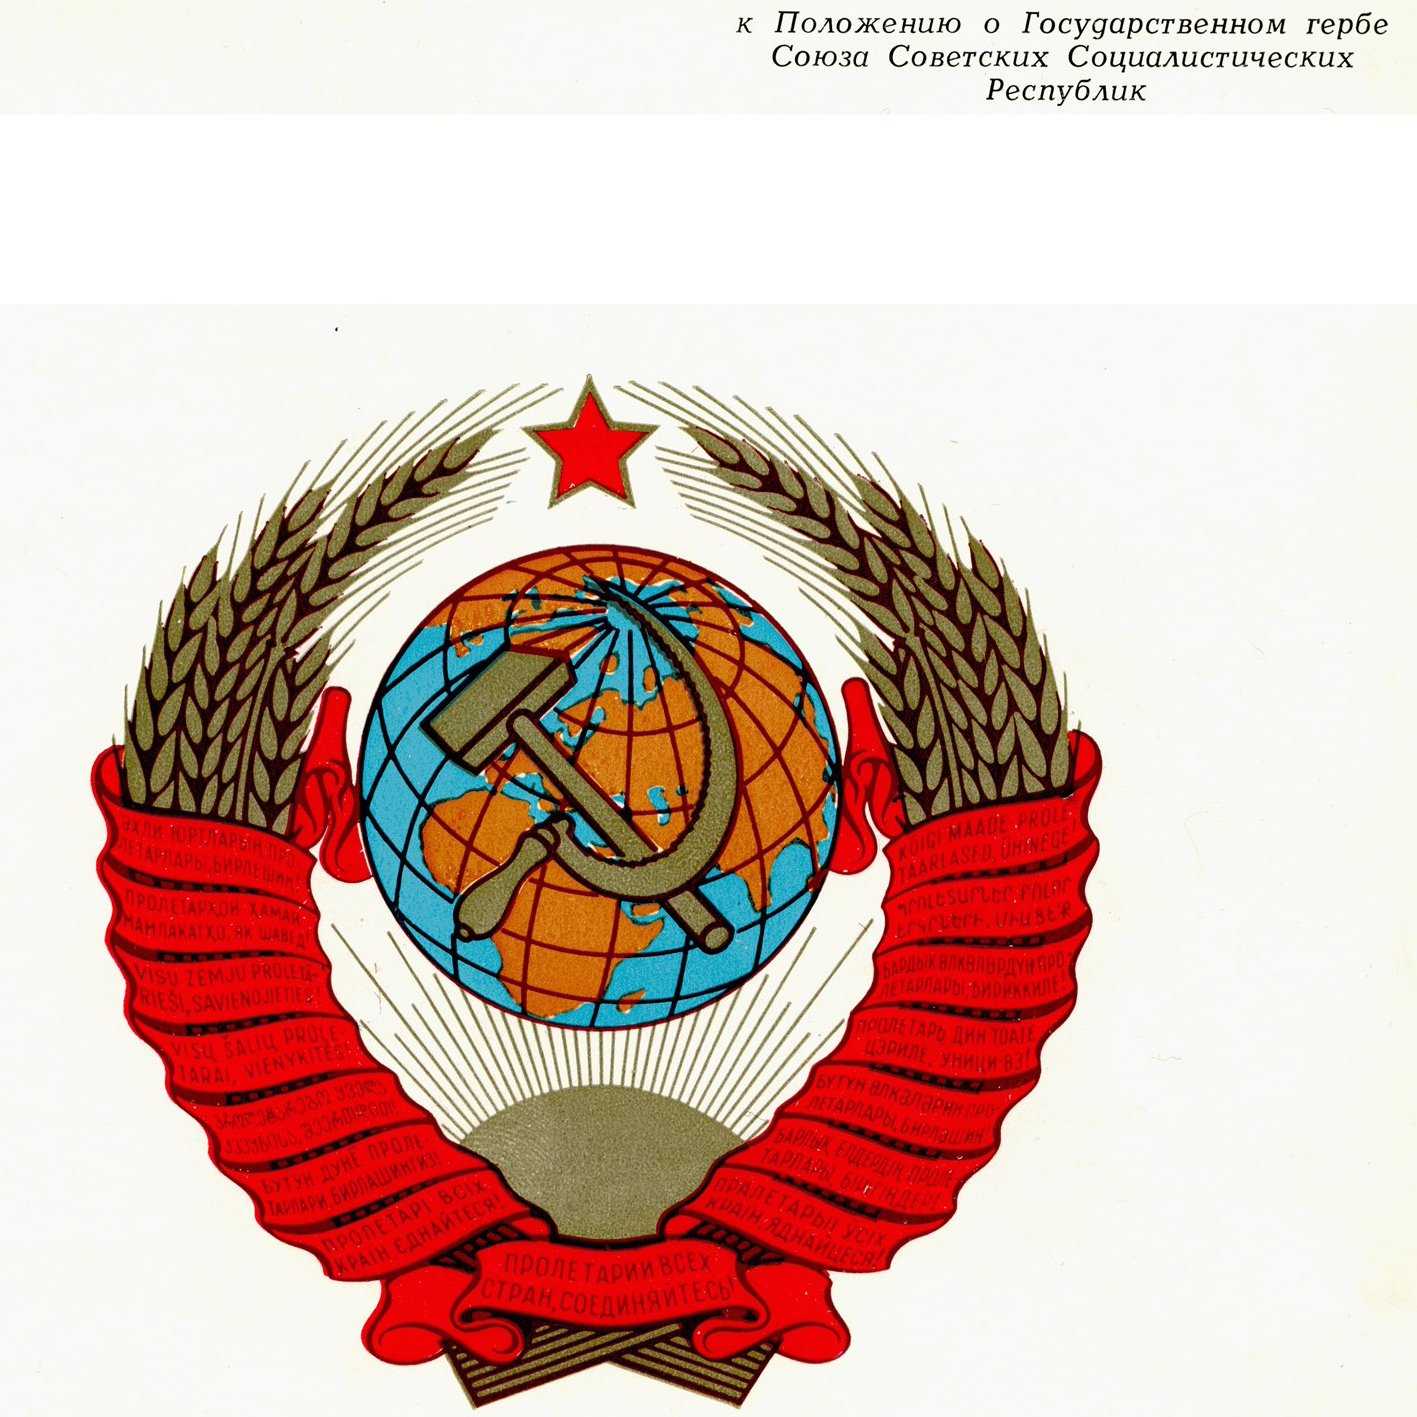 Внешний вид герба СССР